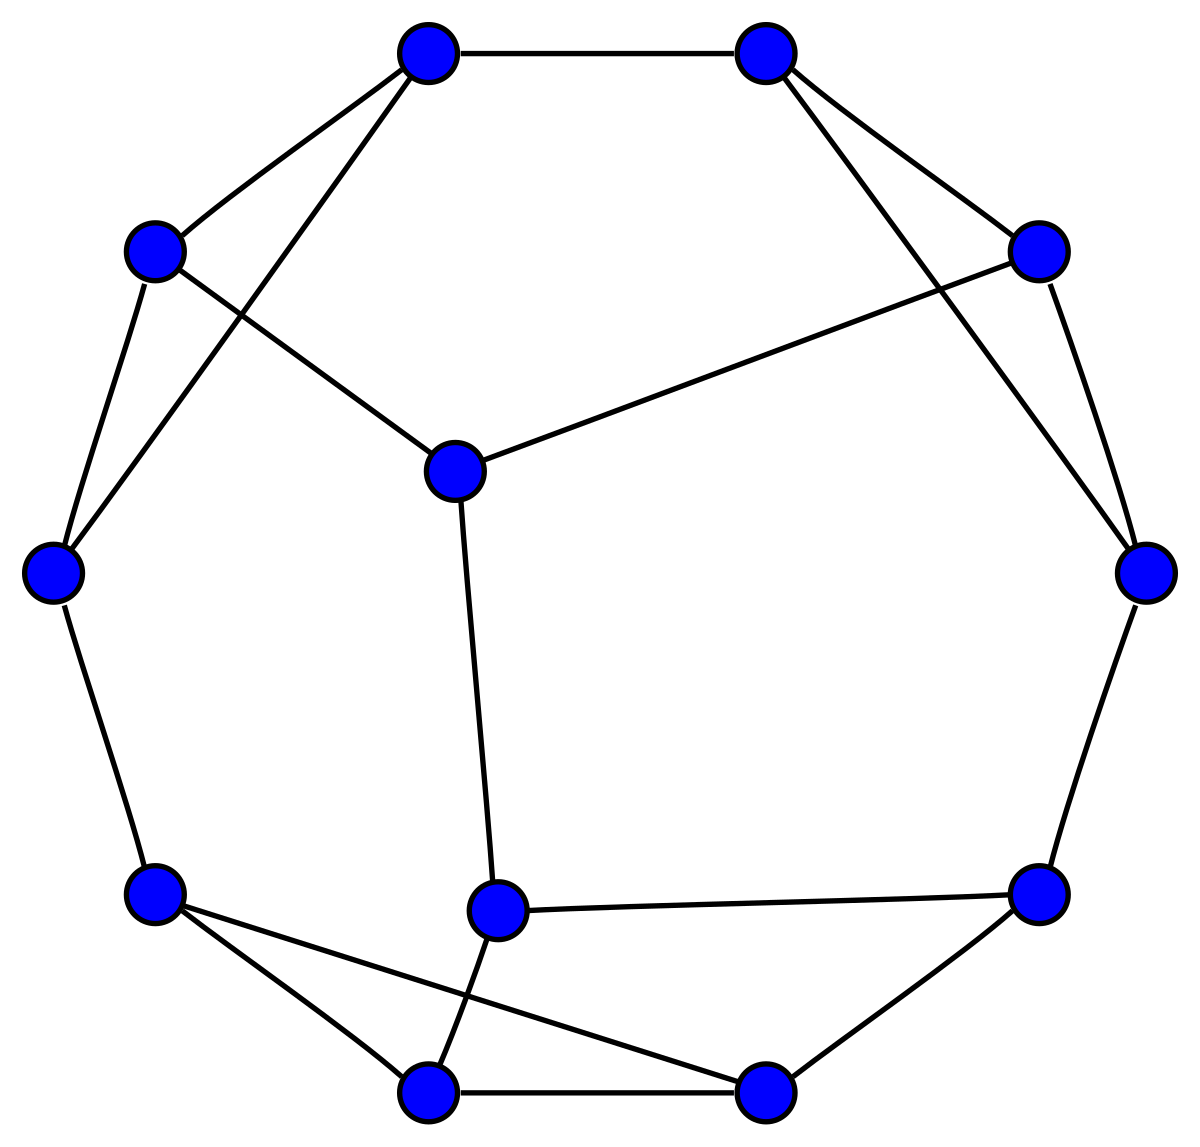 Notação matemática – Wikipédia, a enciclopédia livre